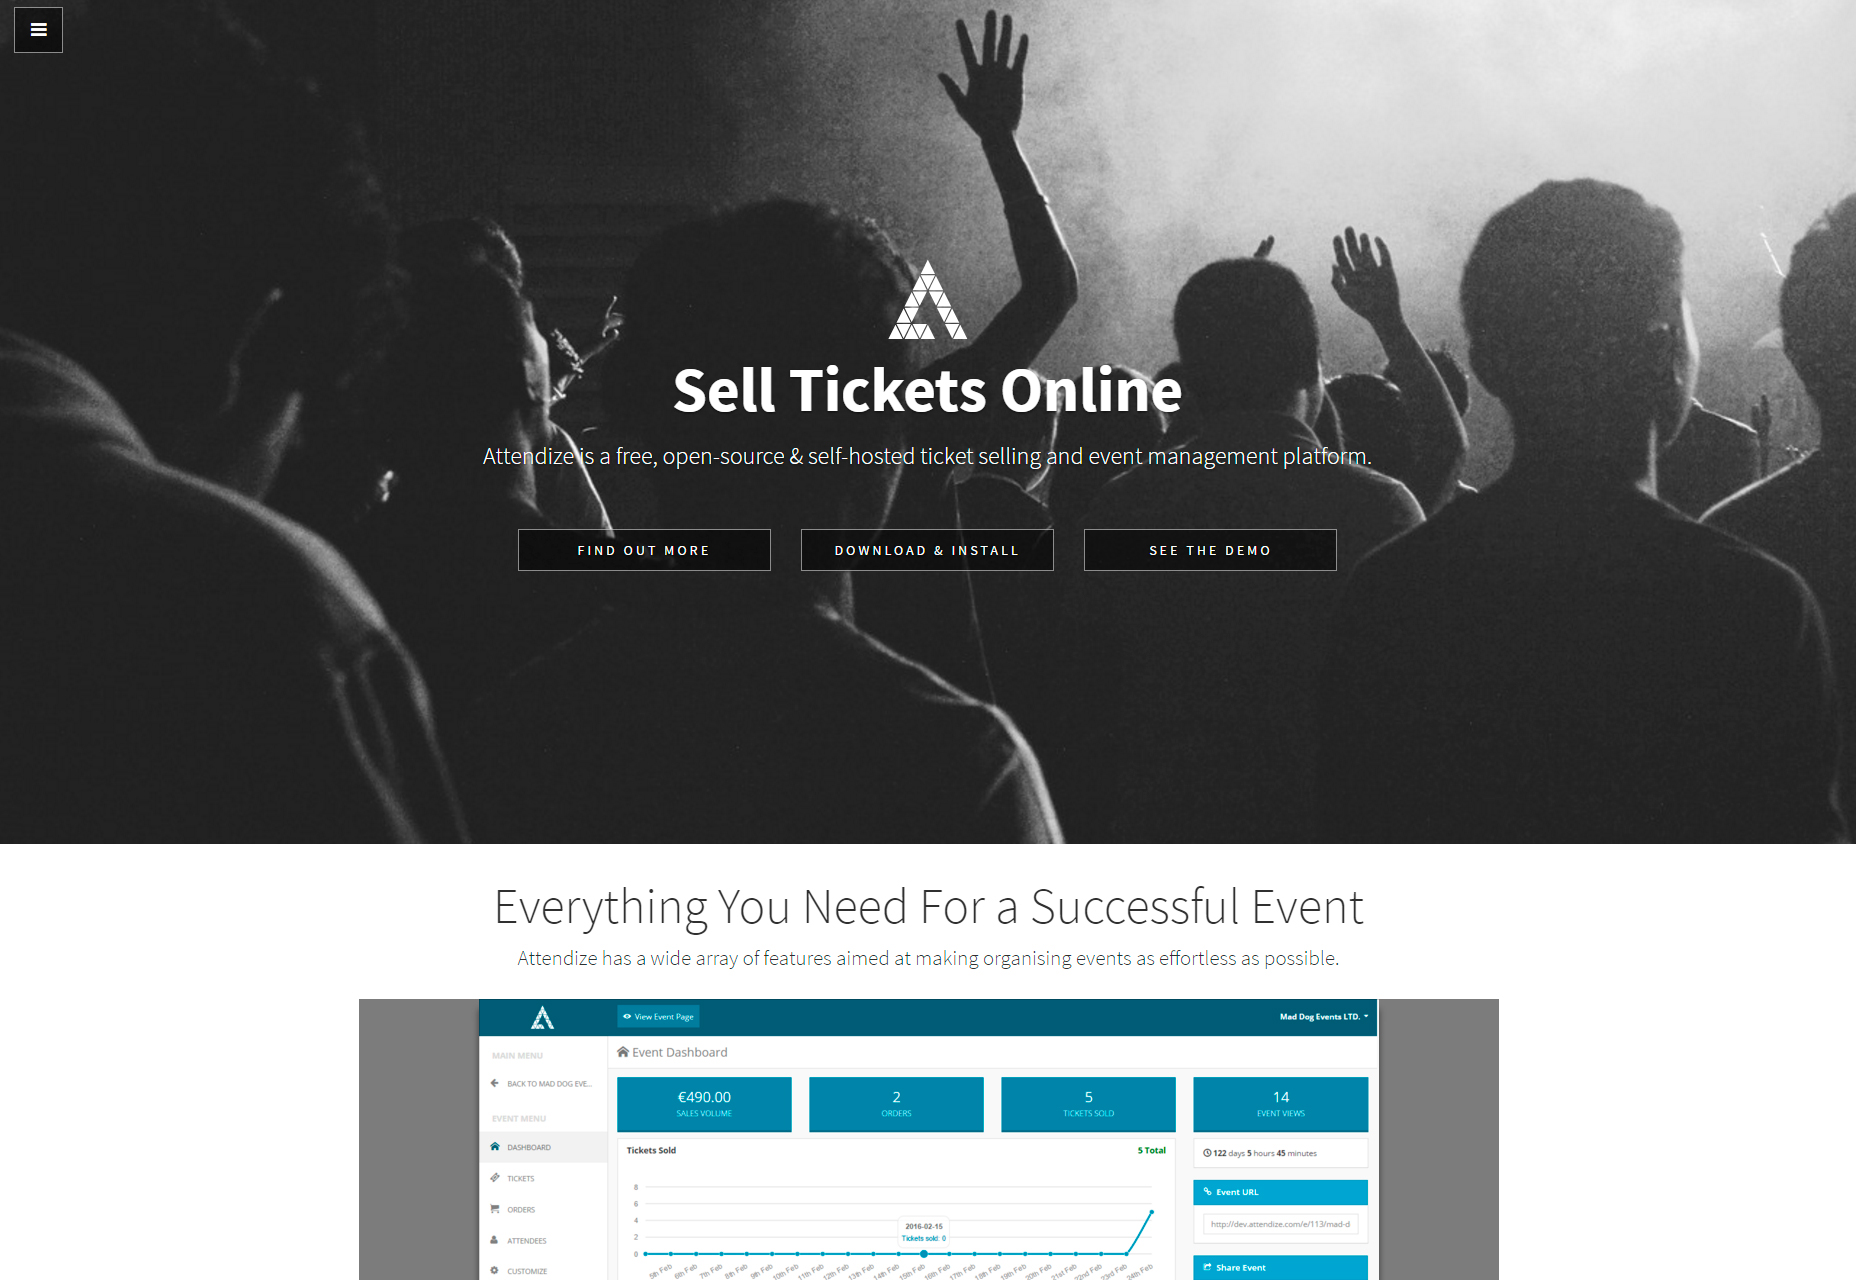 attendize-ticket-selling-event-management-platform